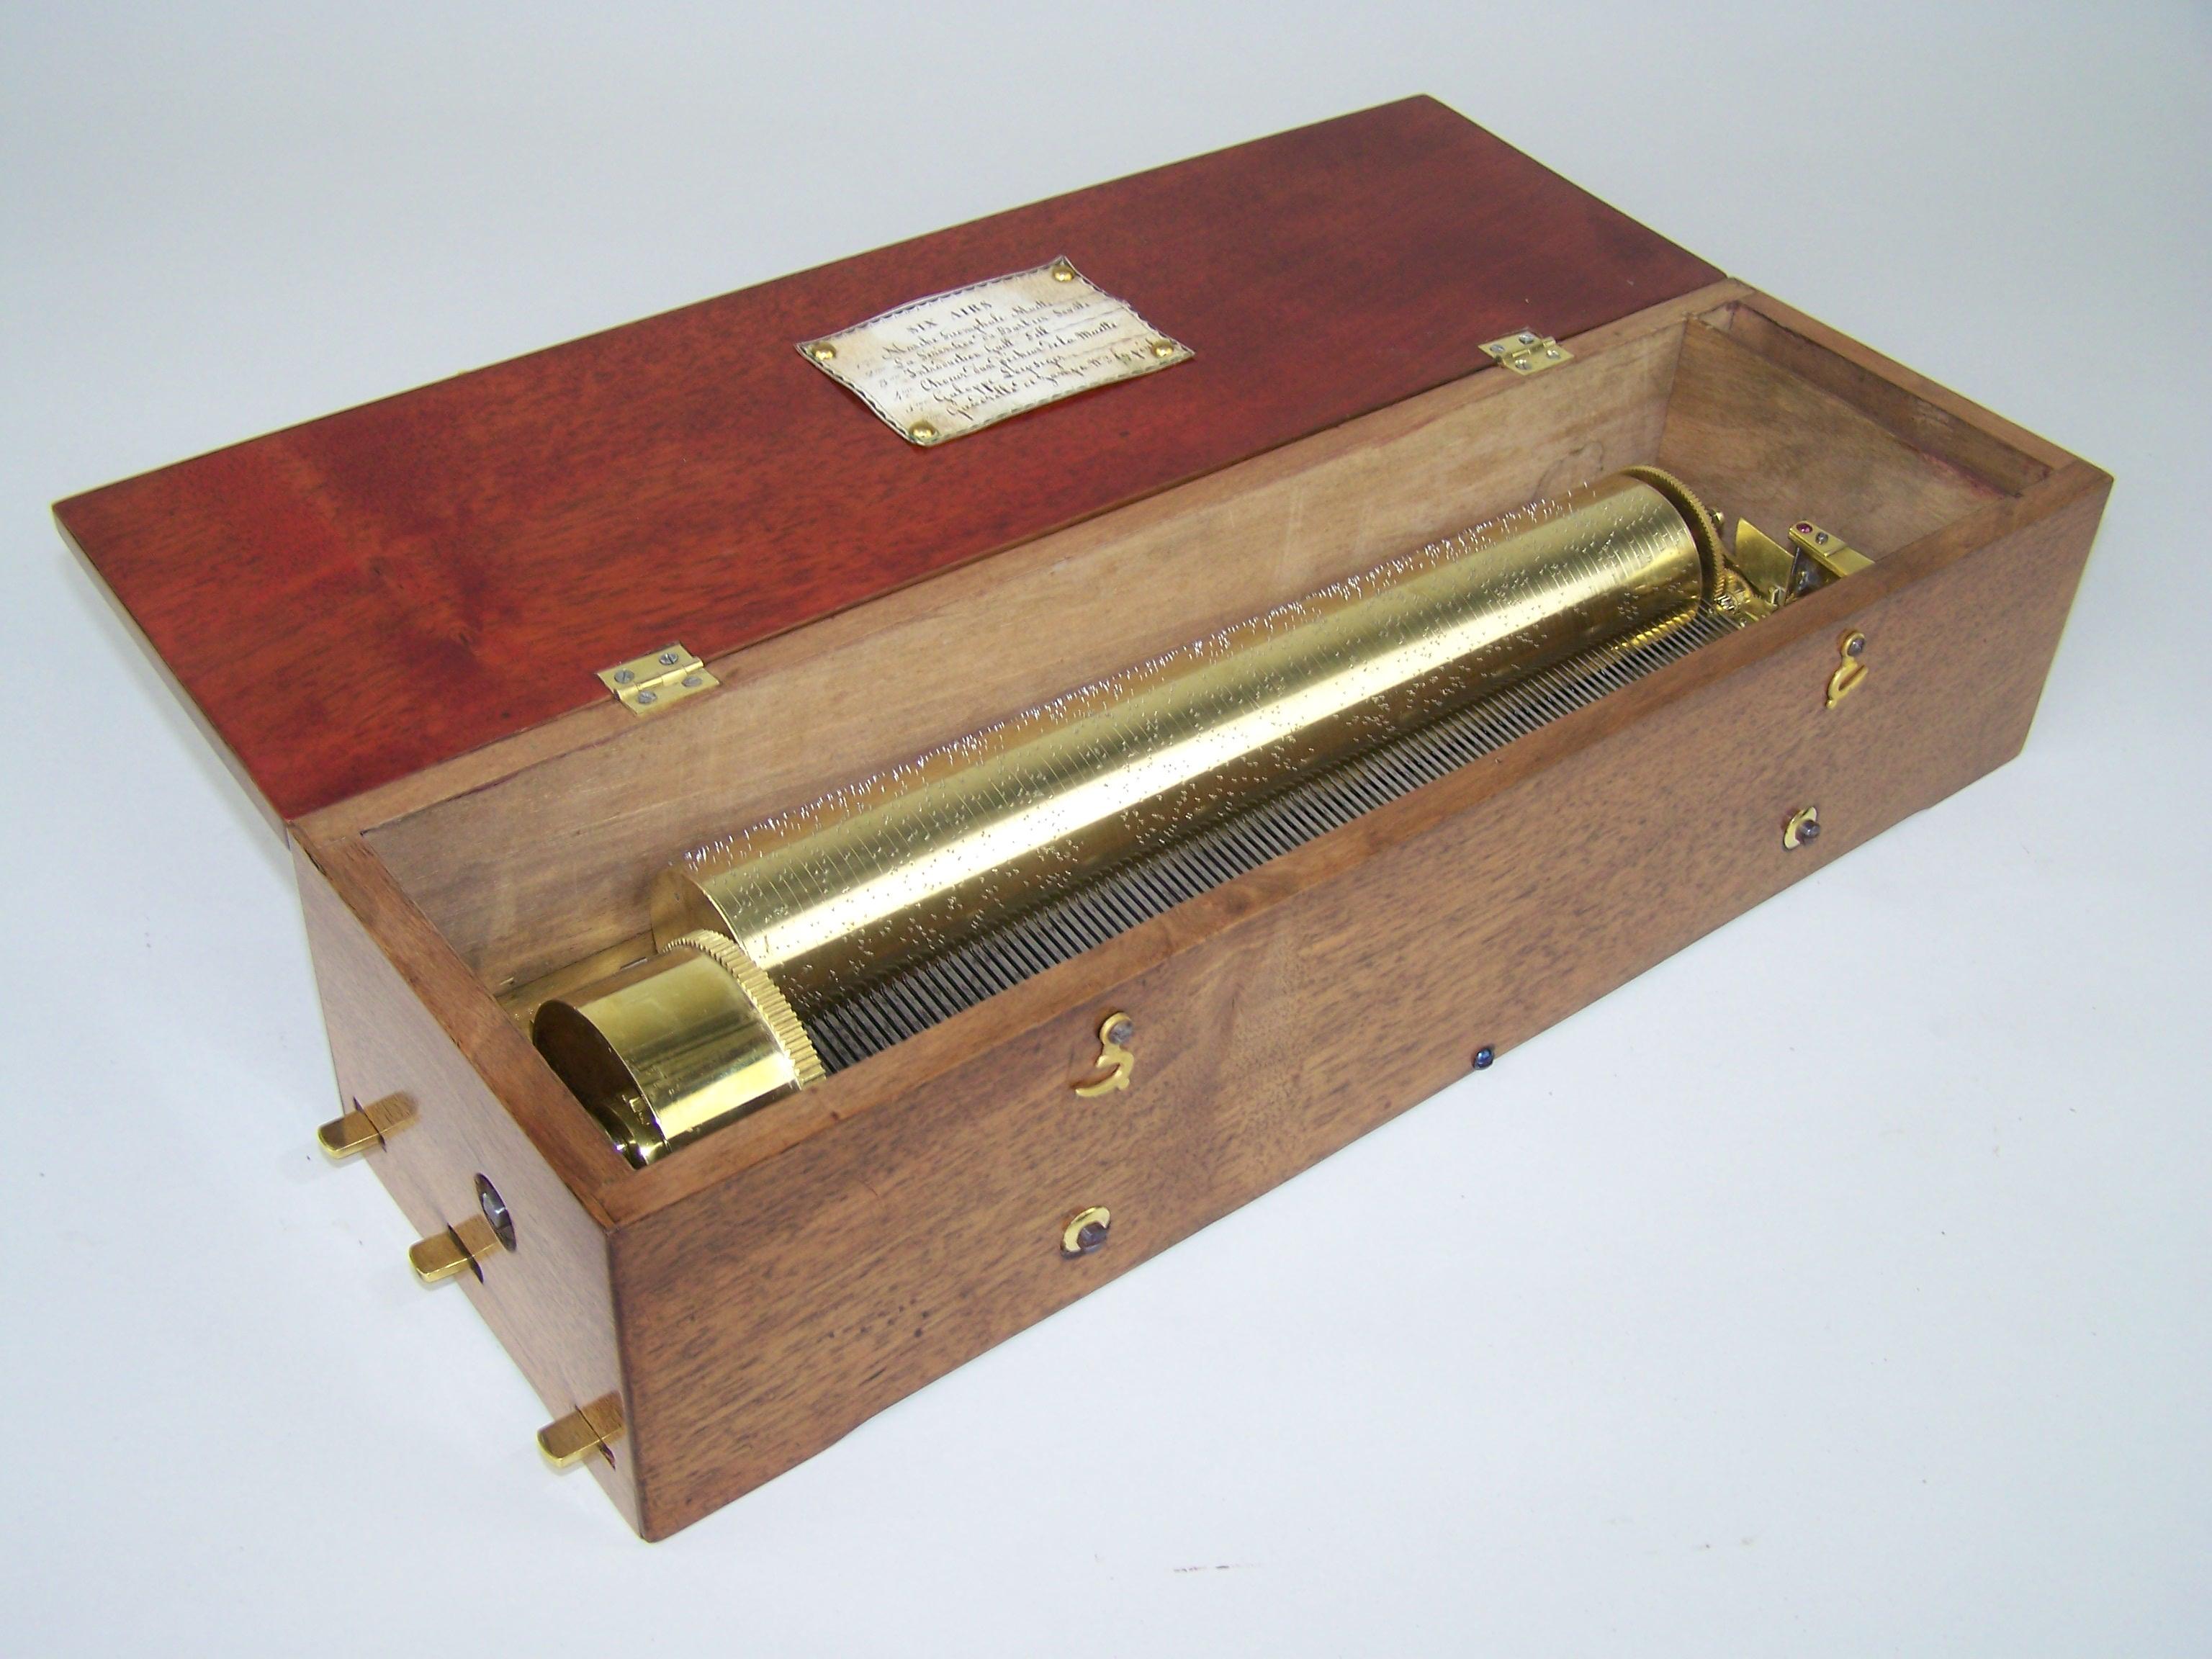 Belle, ancienne et rare boîte à musique fabriquée au début du 19e siècle. Cette boîte à musique ancienne joue 6 mélodies sur un cylindre de 25,7 cm. Au début du 19e siècle, des boîtes d'une excellente qualité musicale ont été construites. Cette